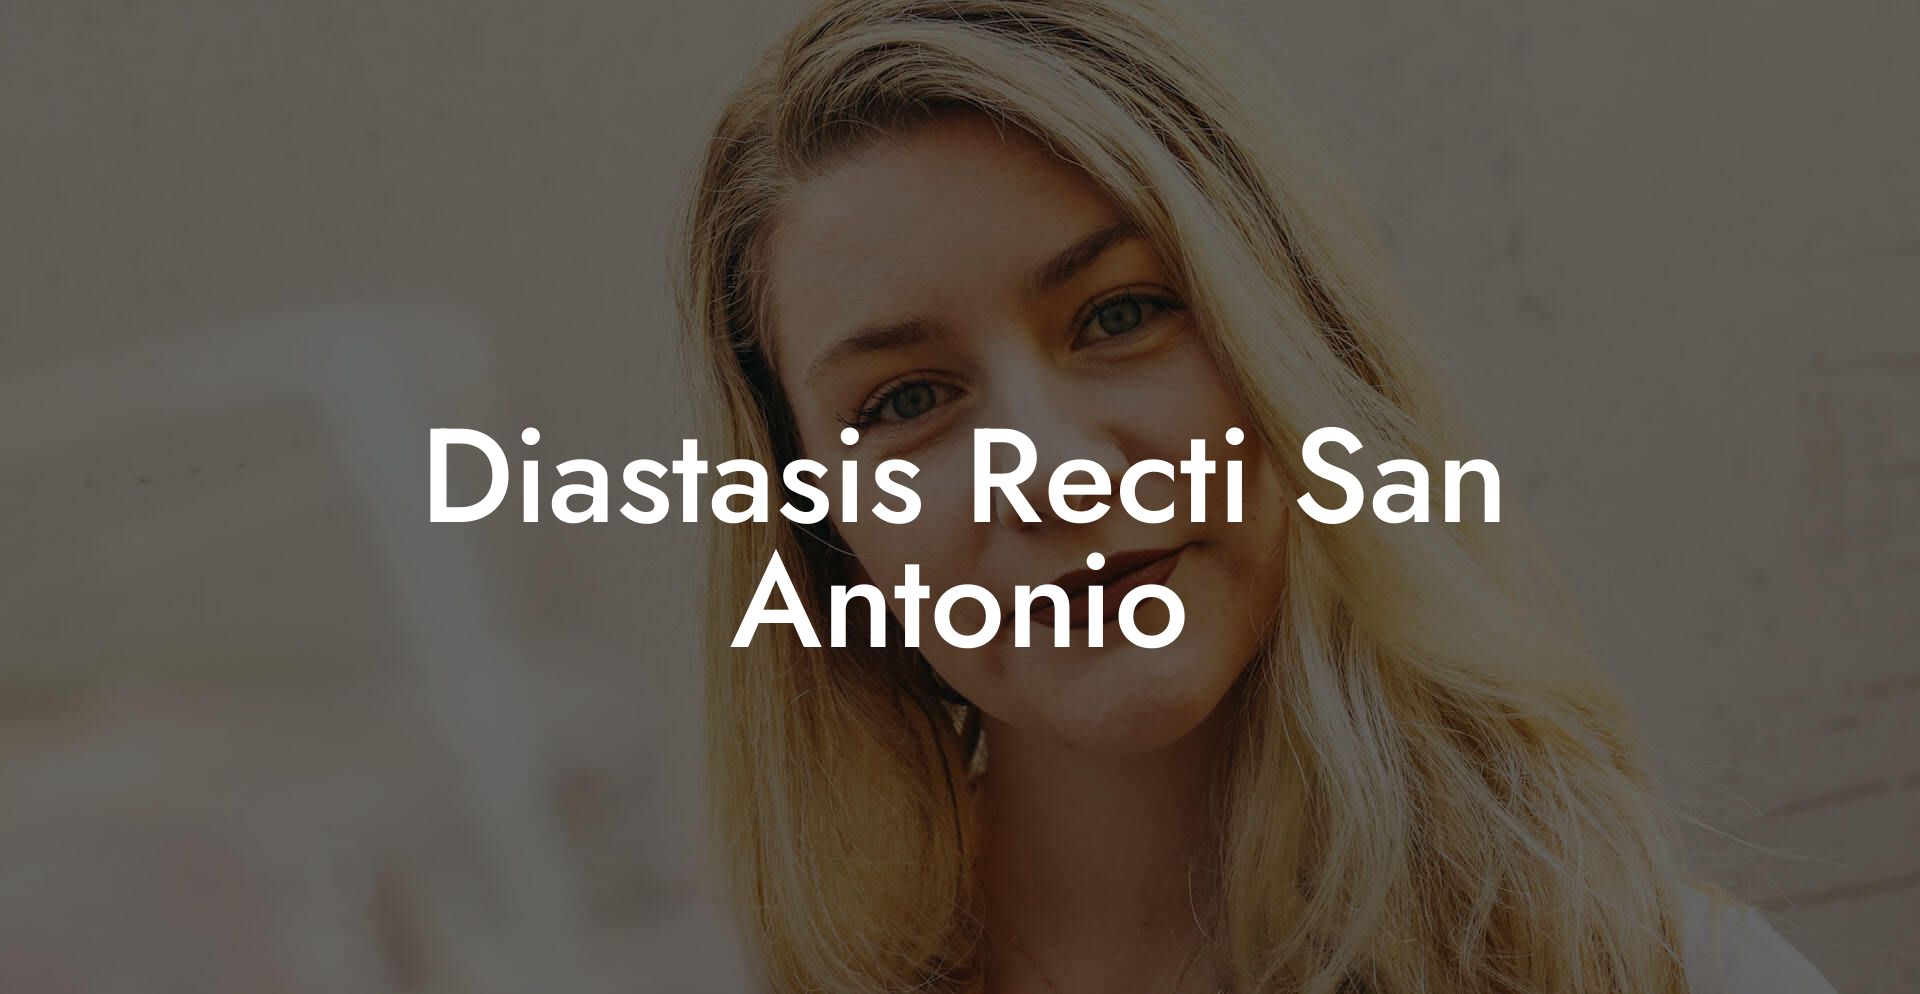 Diastasis Recti San Antonio